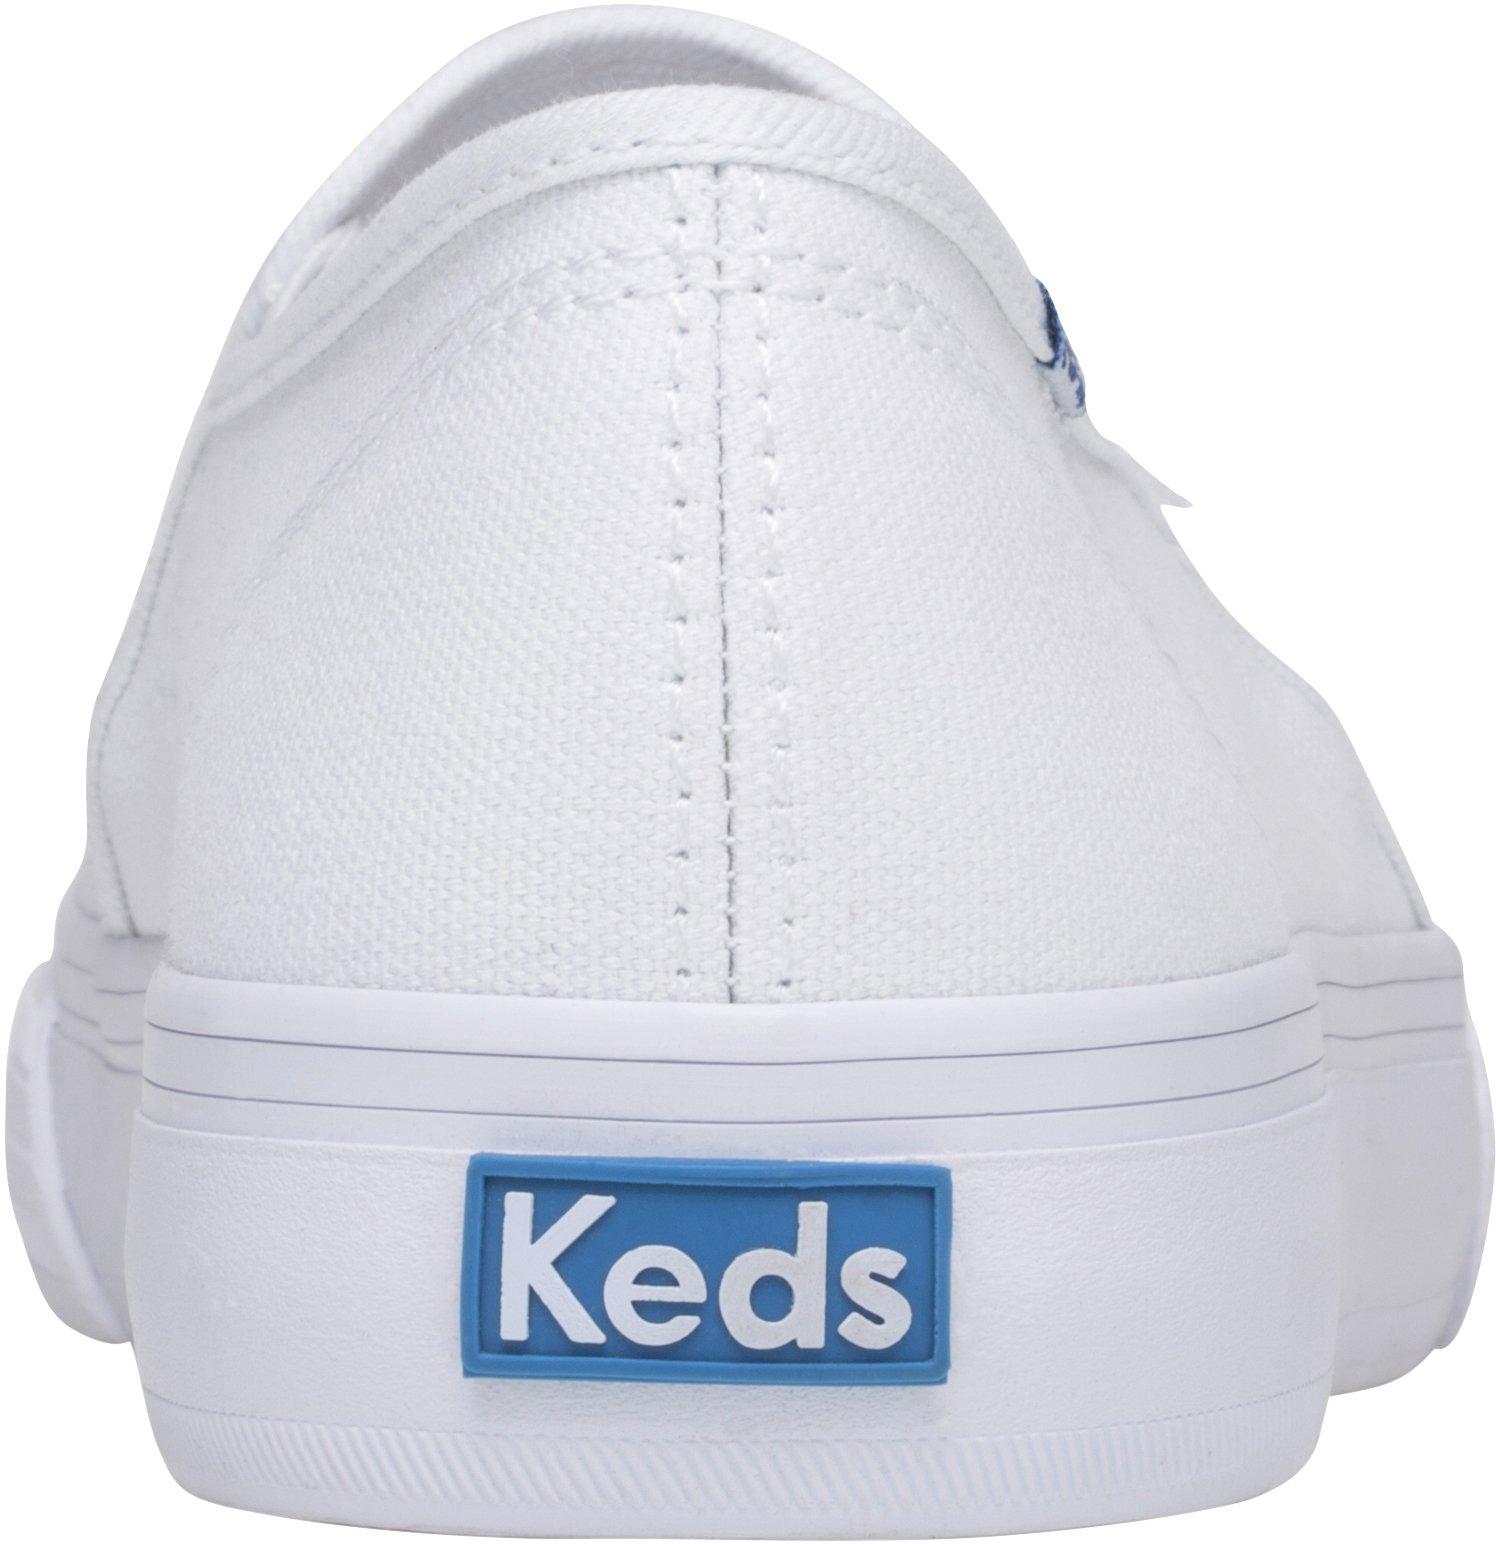 keds shoes website